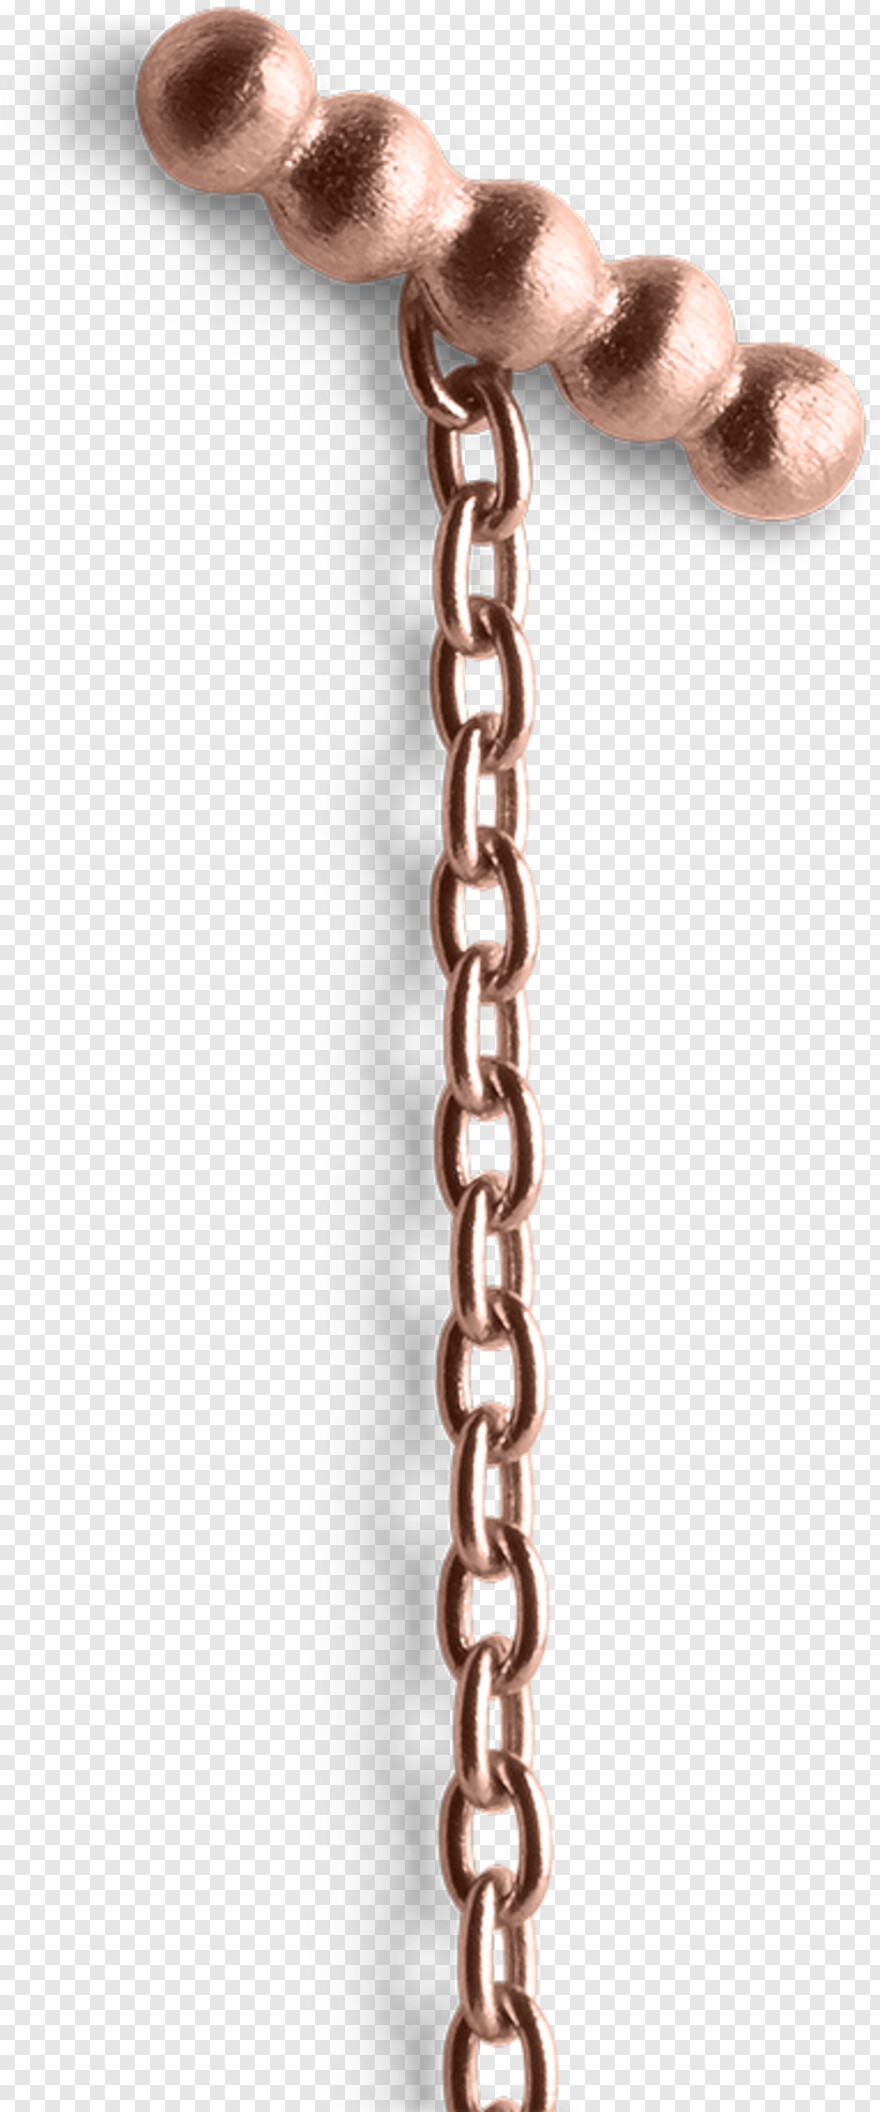 chain # 416416